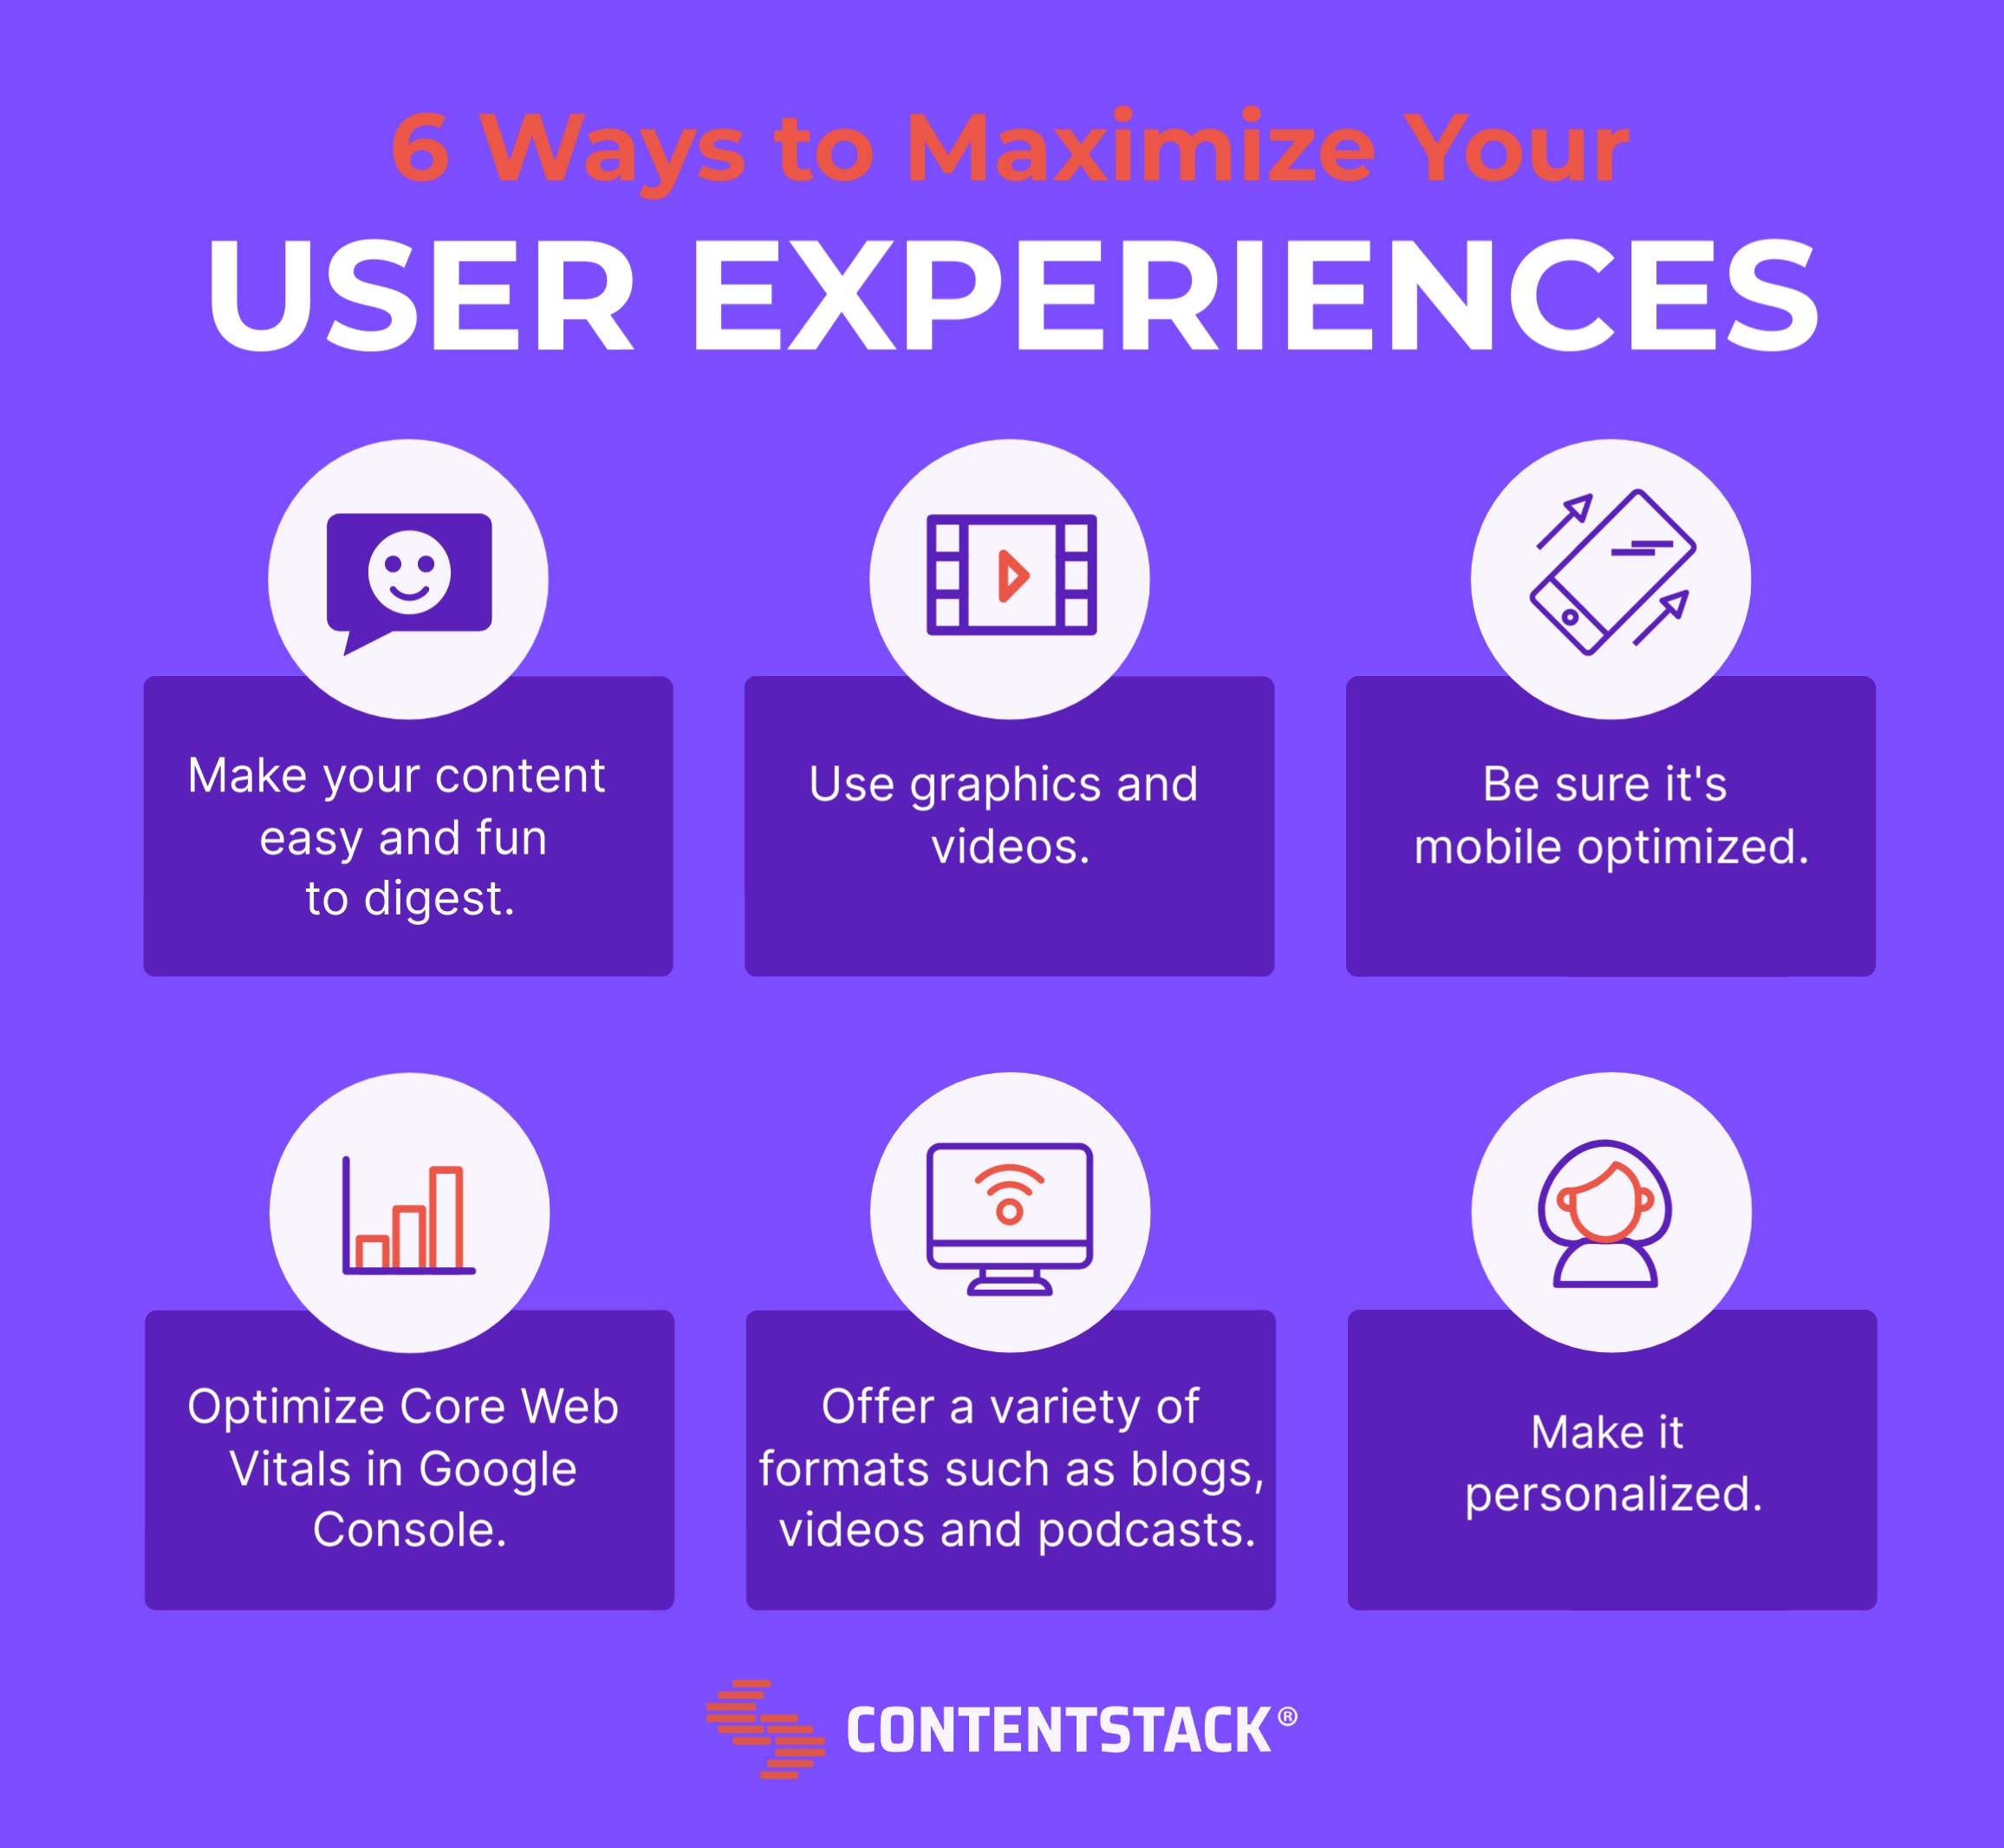 Infographic summarizing six ways to maximize user experiences.